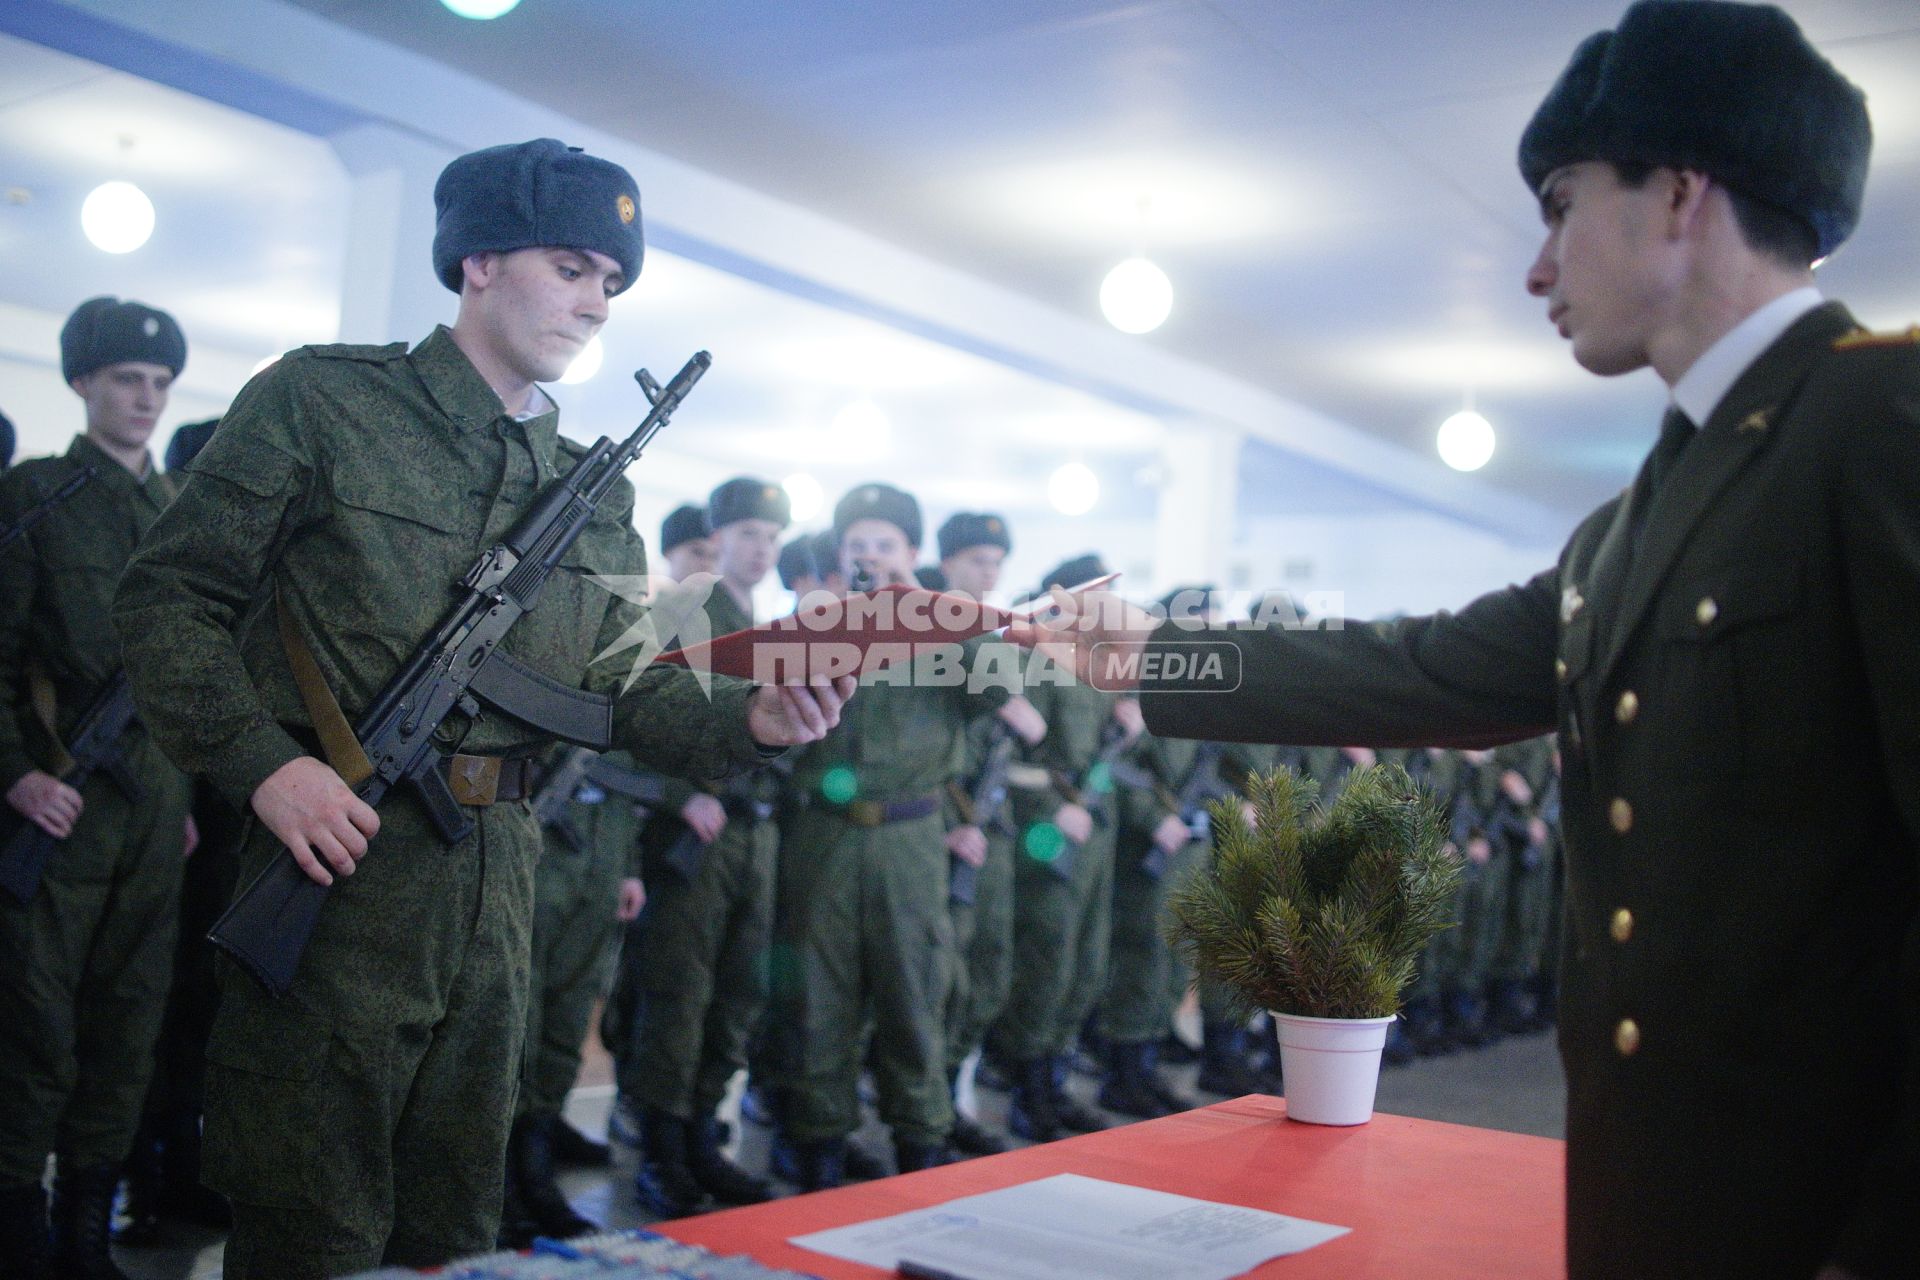 В Еланском военном гарнизоне к воинской присяге привели молодое пополнение. На снимке: новобранец принимает присягу.